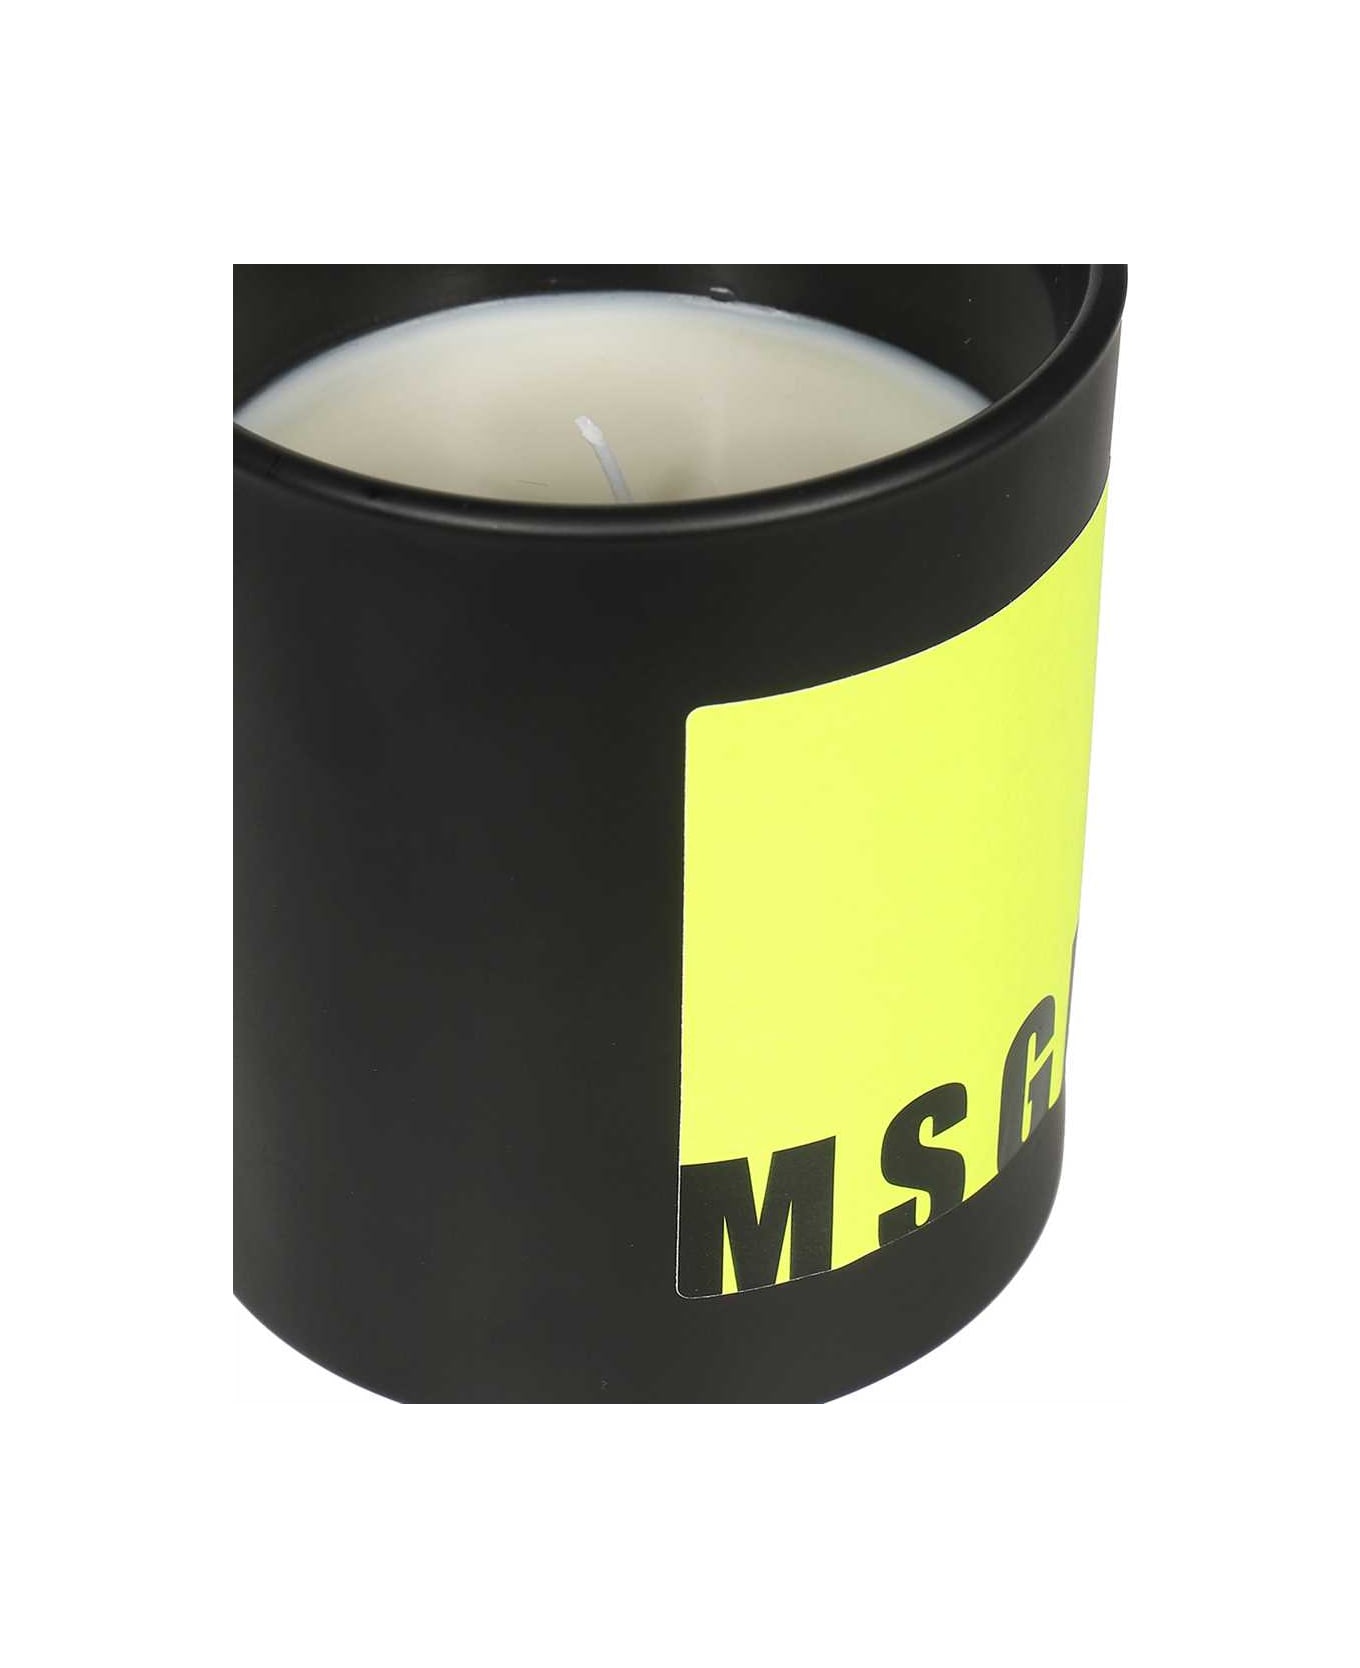 MSGM Citronella Candle - black インテリア雑貨